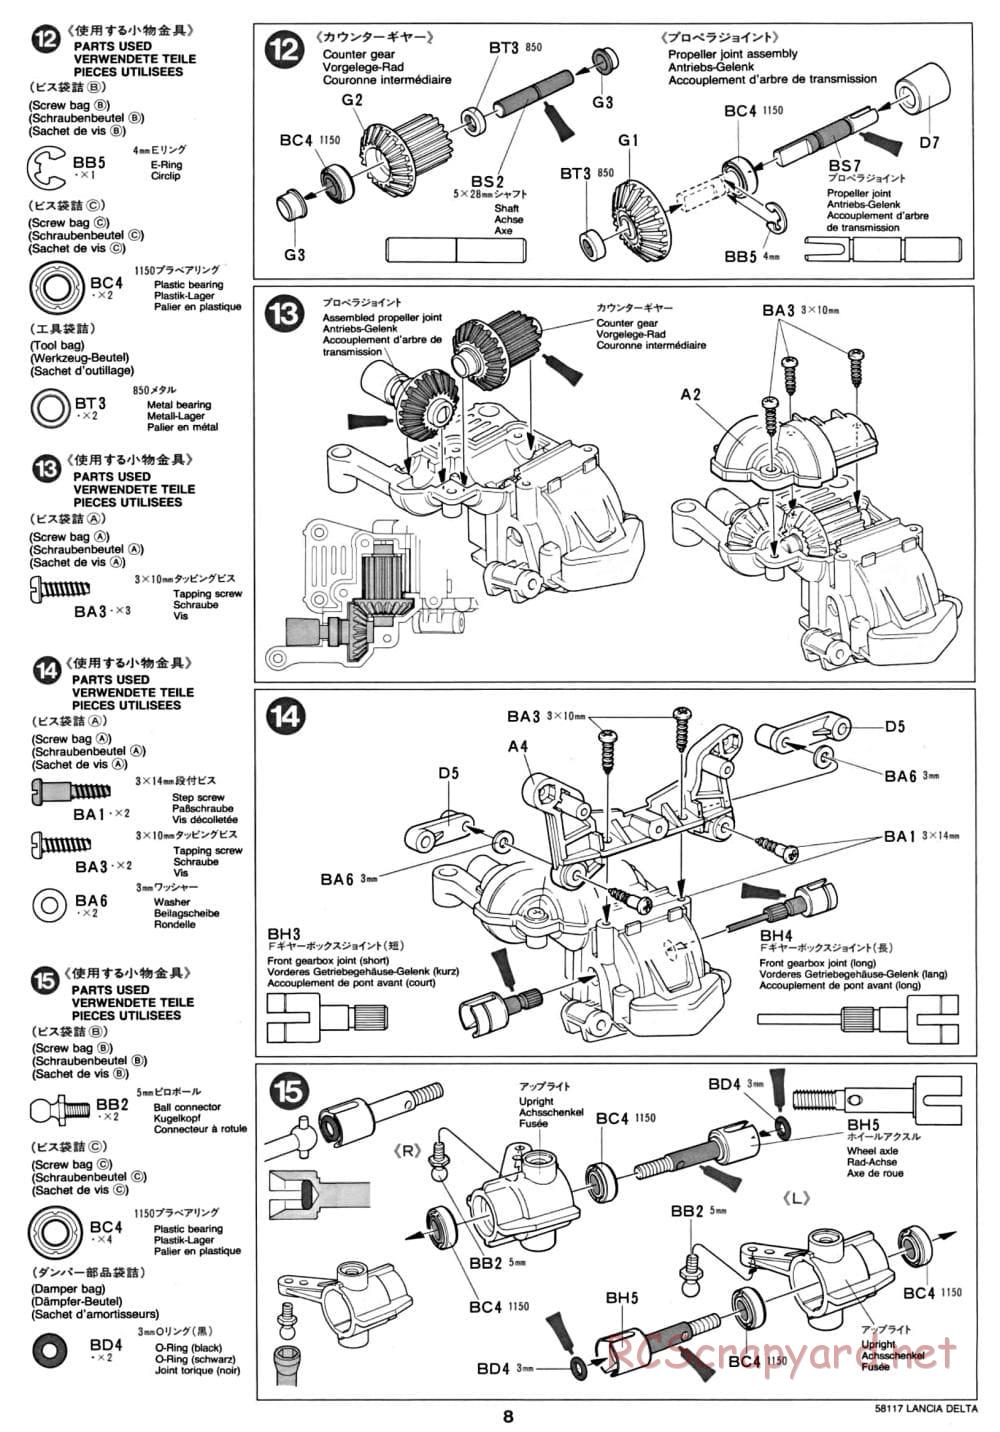 Tamiya - Lancia Delta HF Integrale - TA-01 Chassis - Manual - Page 8